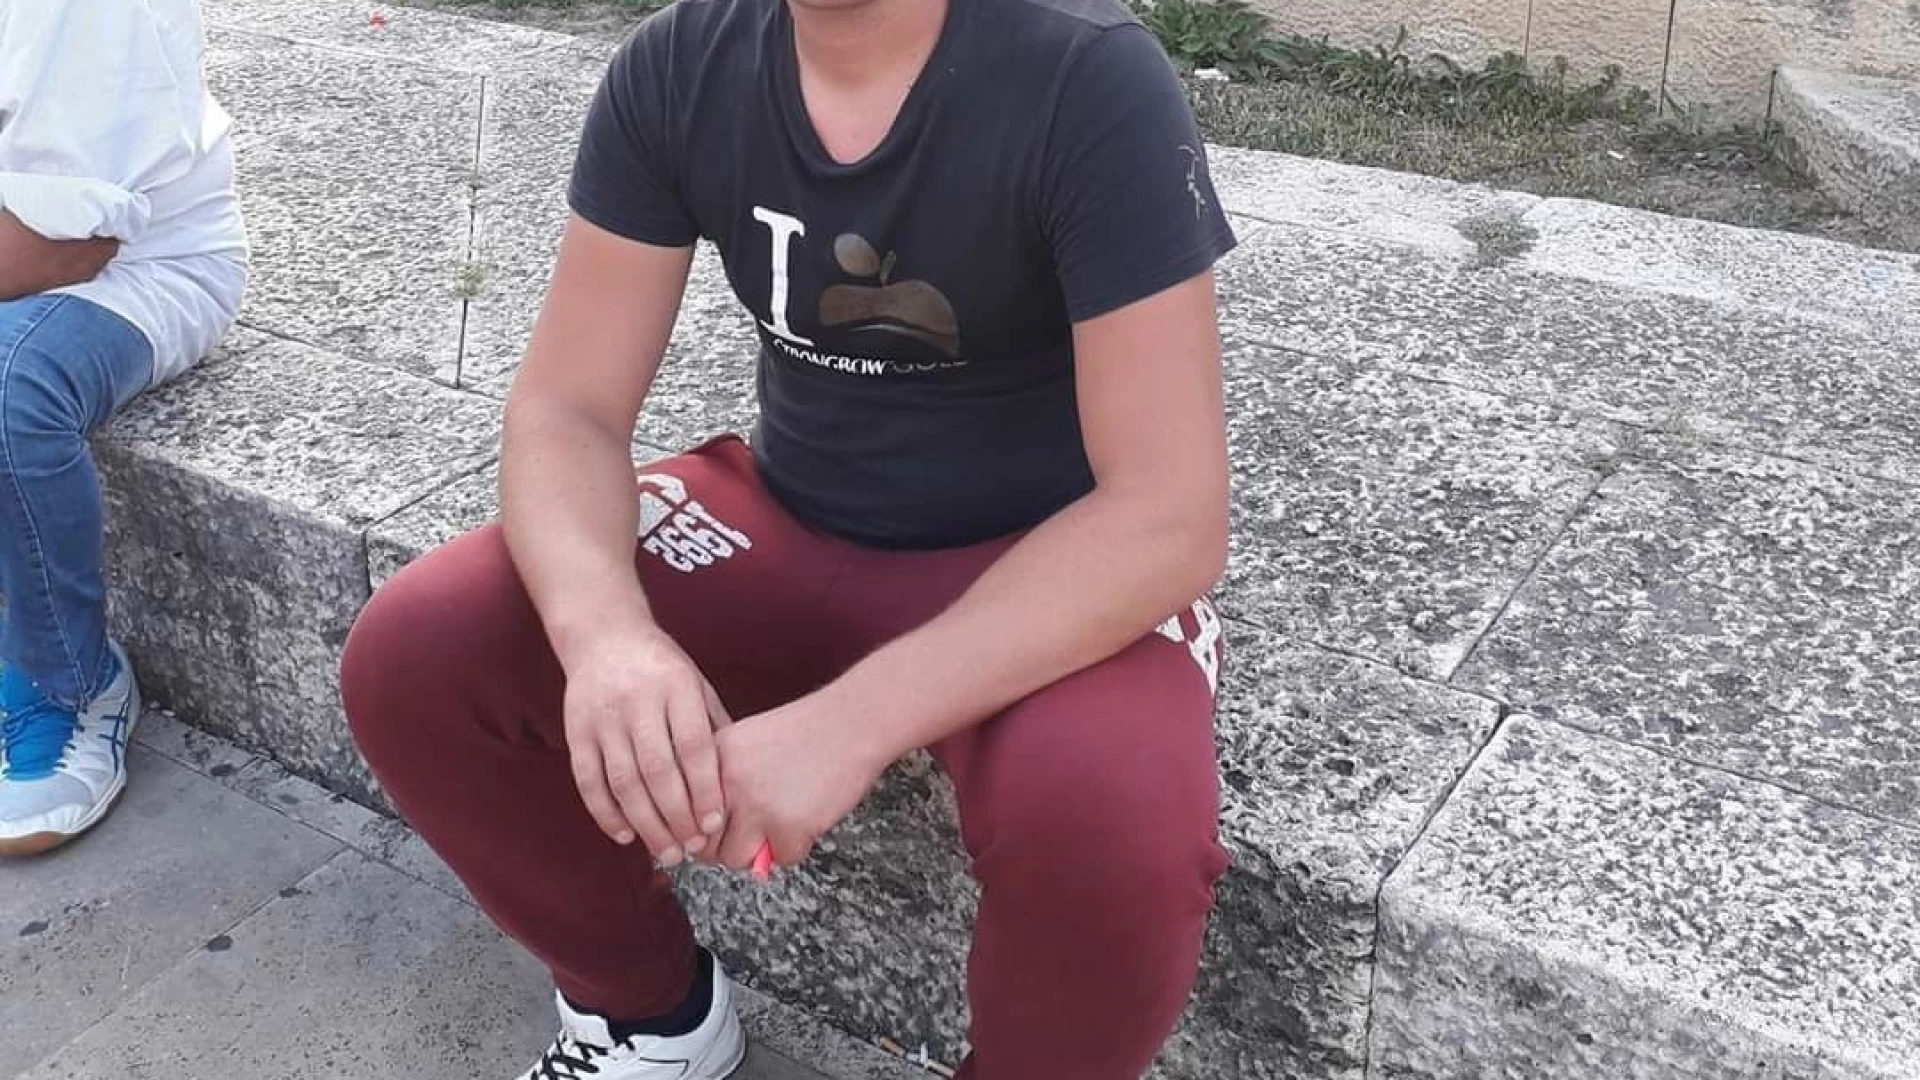 Rocchetta a Volturno-Isernia: tanta tristezza per la scomparsa improvvisa di un giovane trovato privo di vita in casa